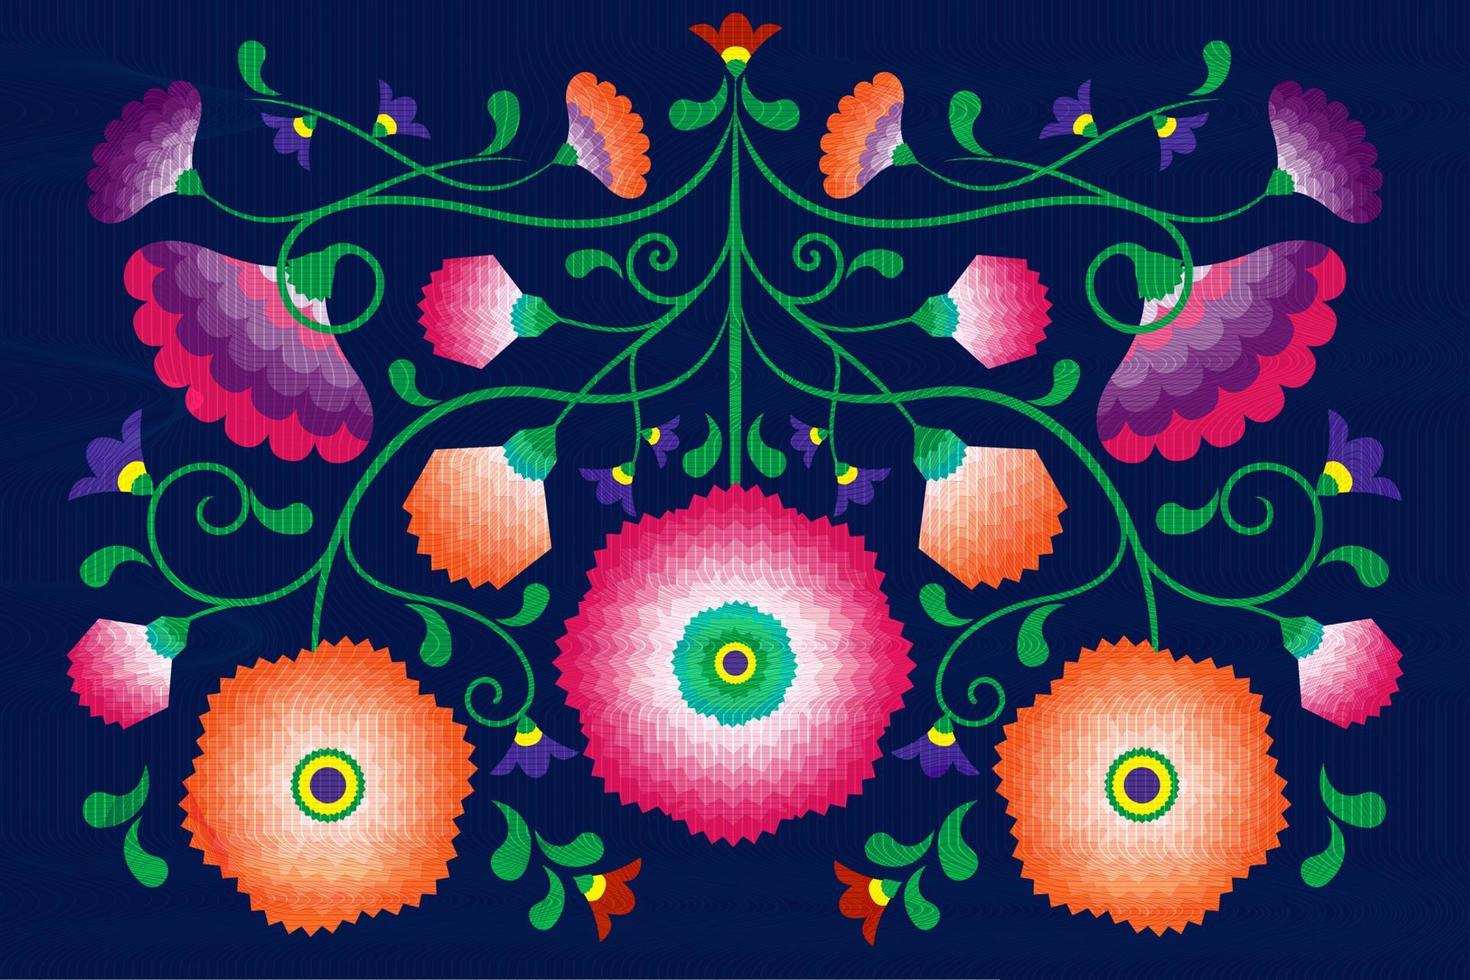 bordado de flores nativas padrão folclórico com influência polonesa e mexicana. na moda étnica decorativa floral tradicional em design simétrico, para a moda, interior, artigos de papelaria. vetor isolado em azul